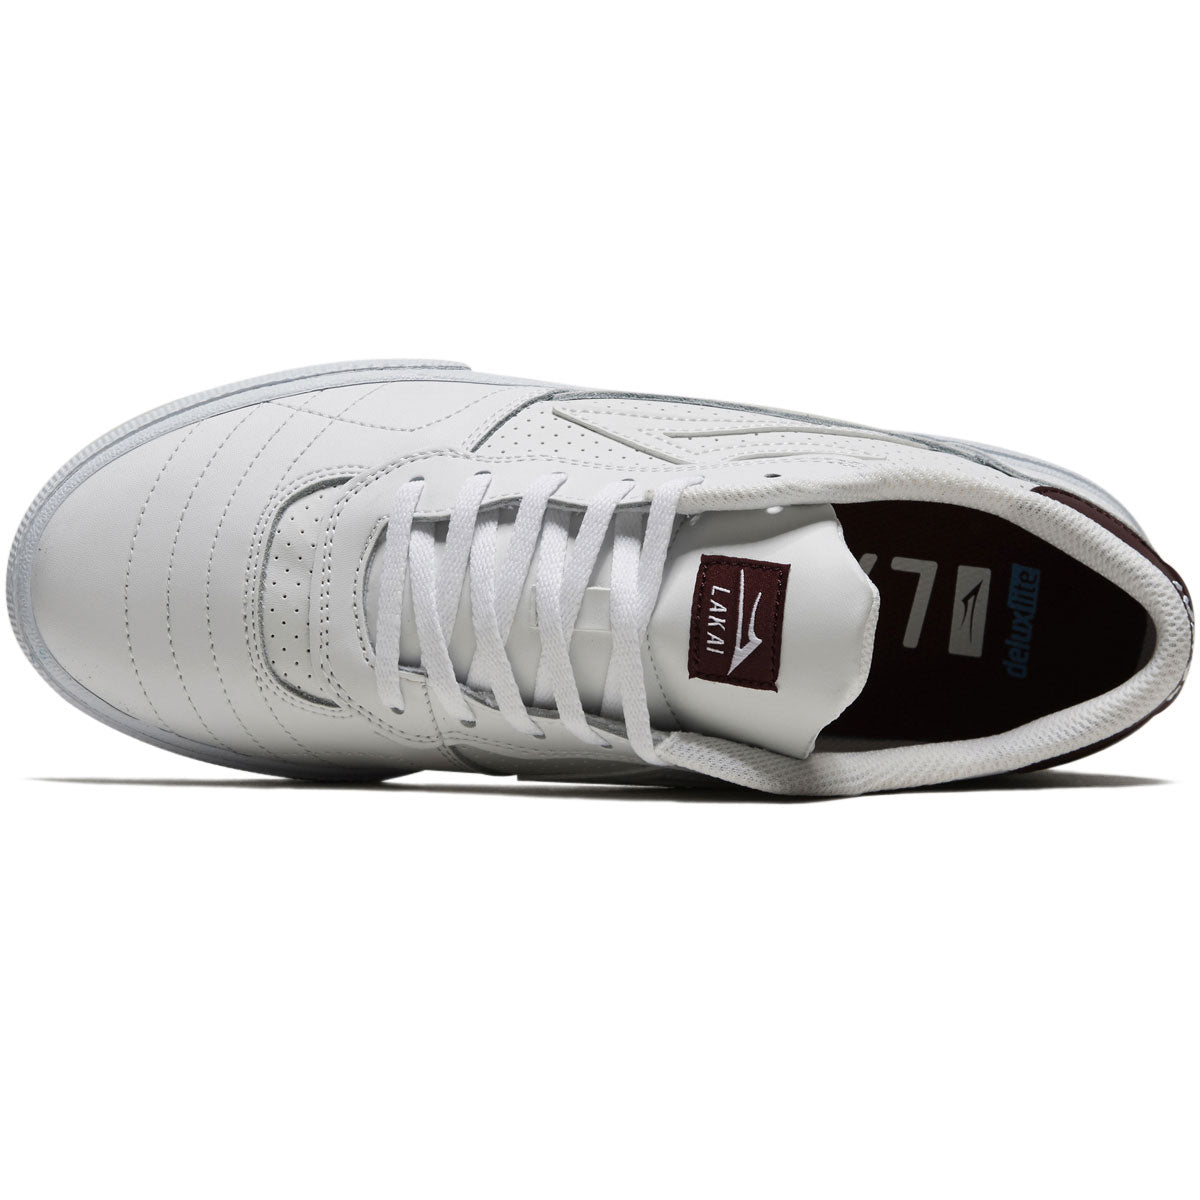 Lakai Cambridge Shoes - White/Burgundy image 3